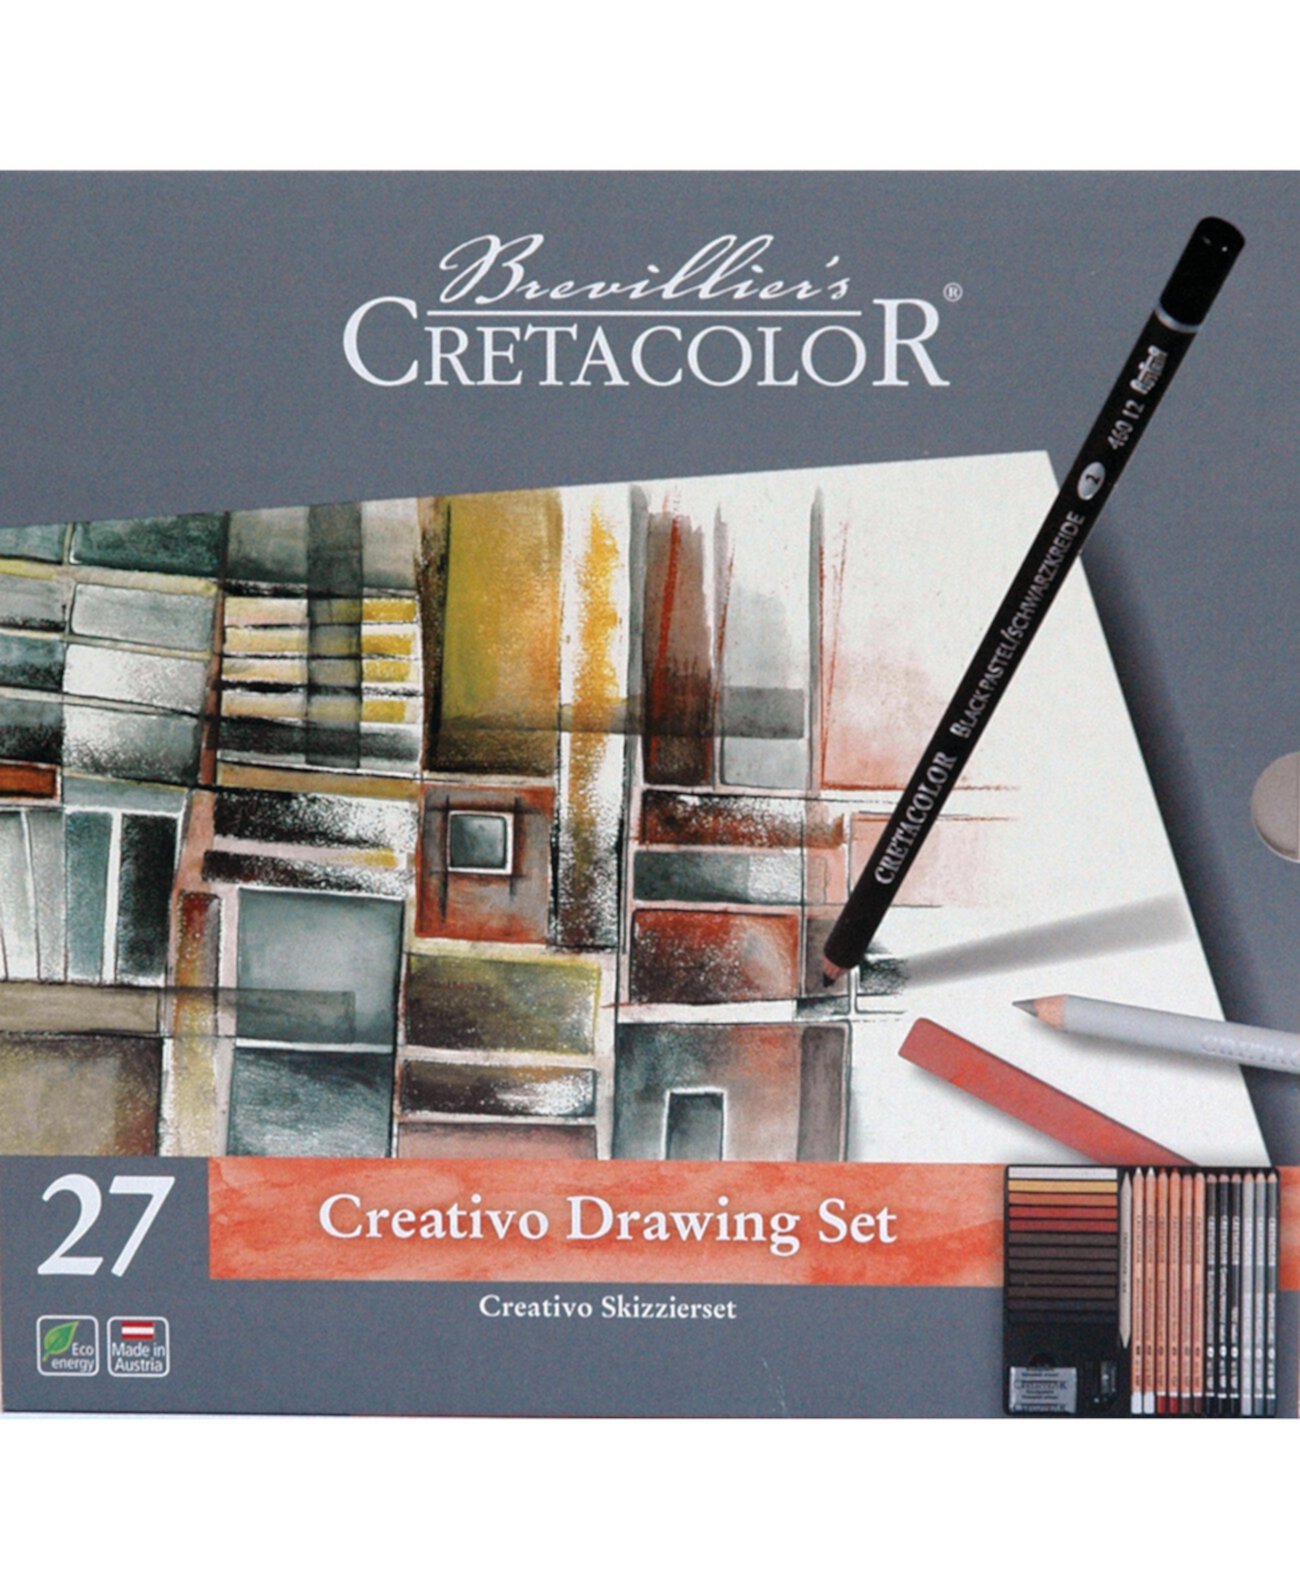 Набор Creativo Tin Drawing из 27 предметов Cretacolor